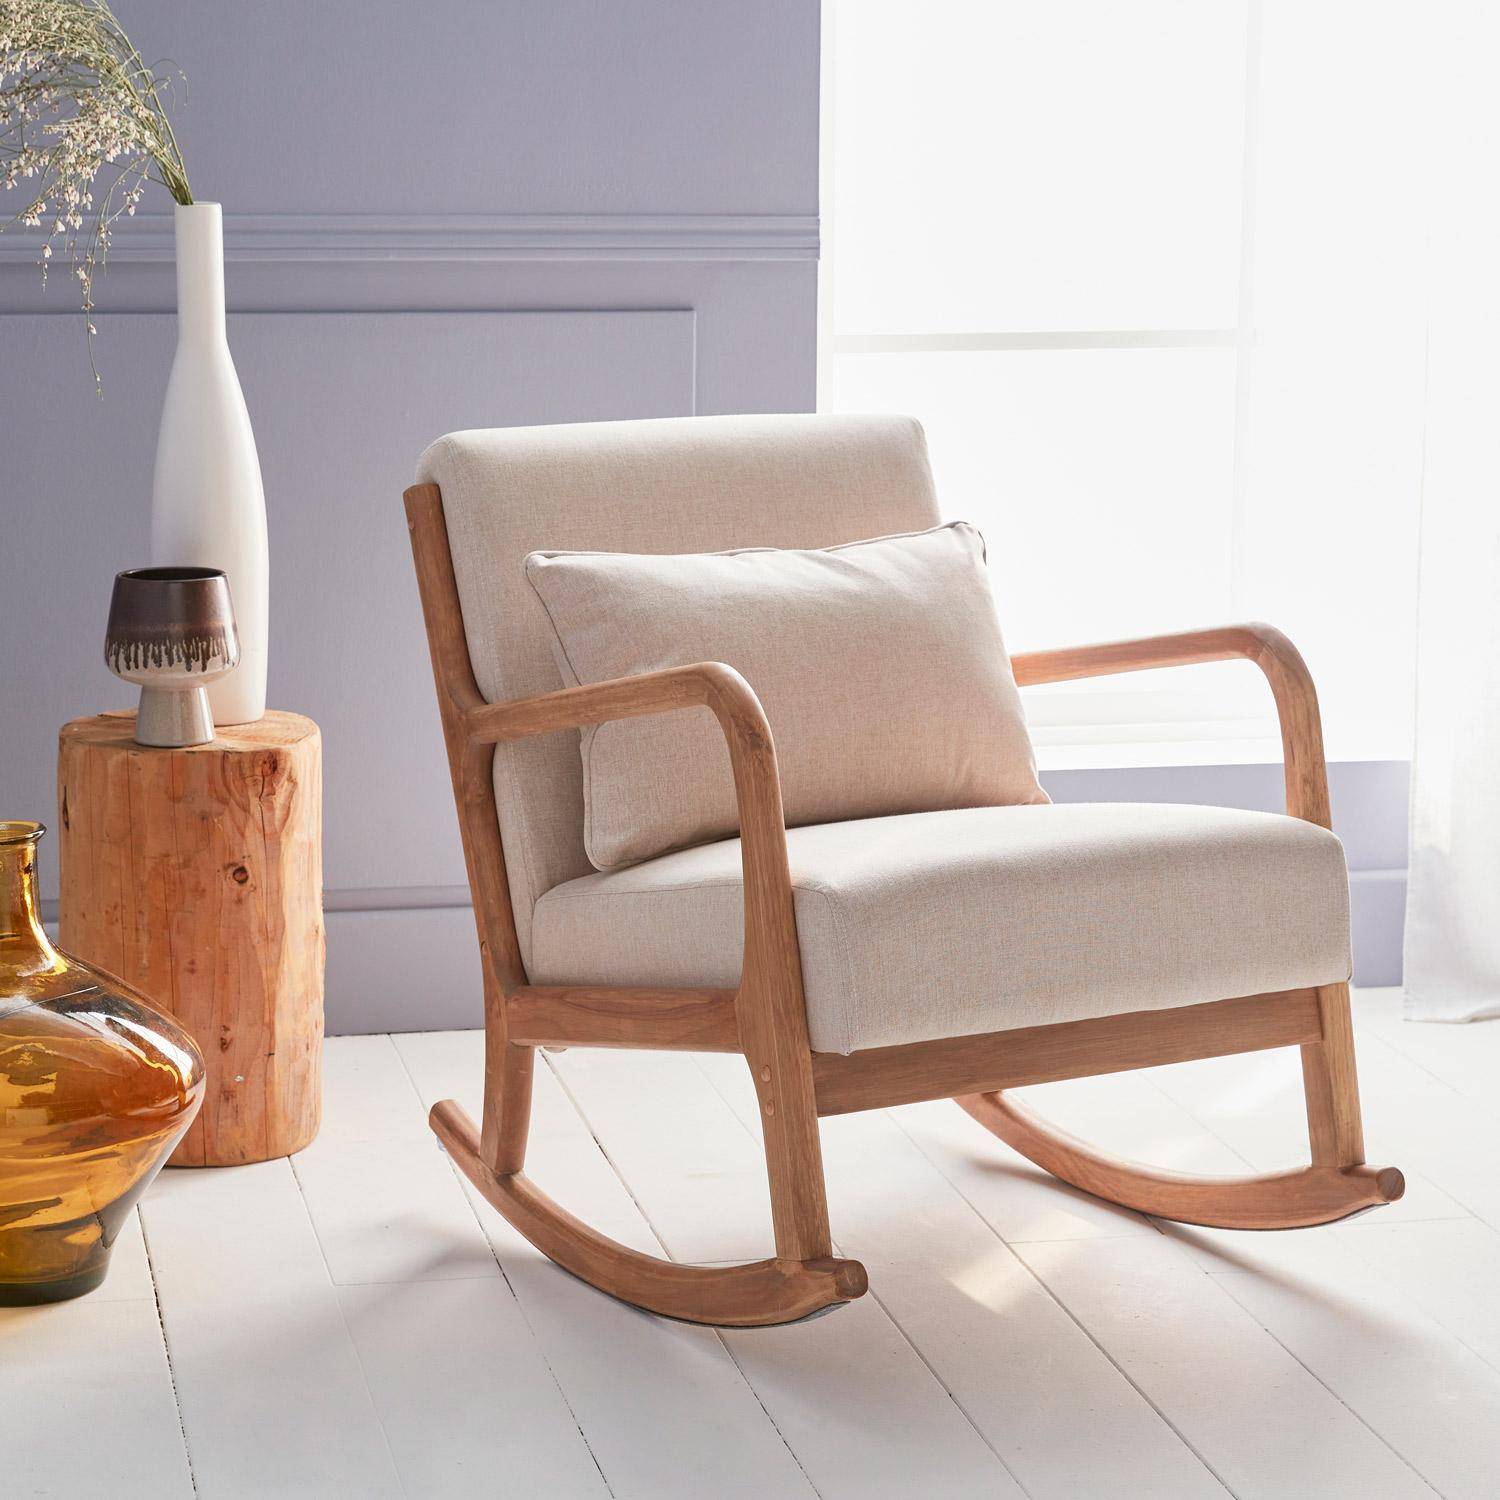 Sedia a dondolo di design in legno e tessuto, 1 posto, sedia a dondolo scandinava, beige Photo1